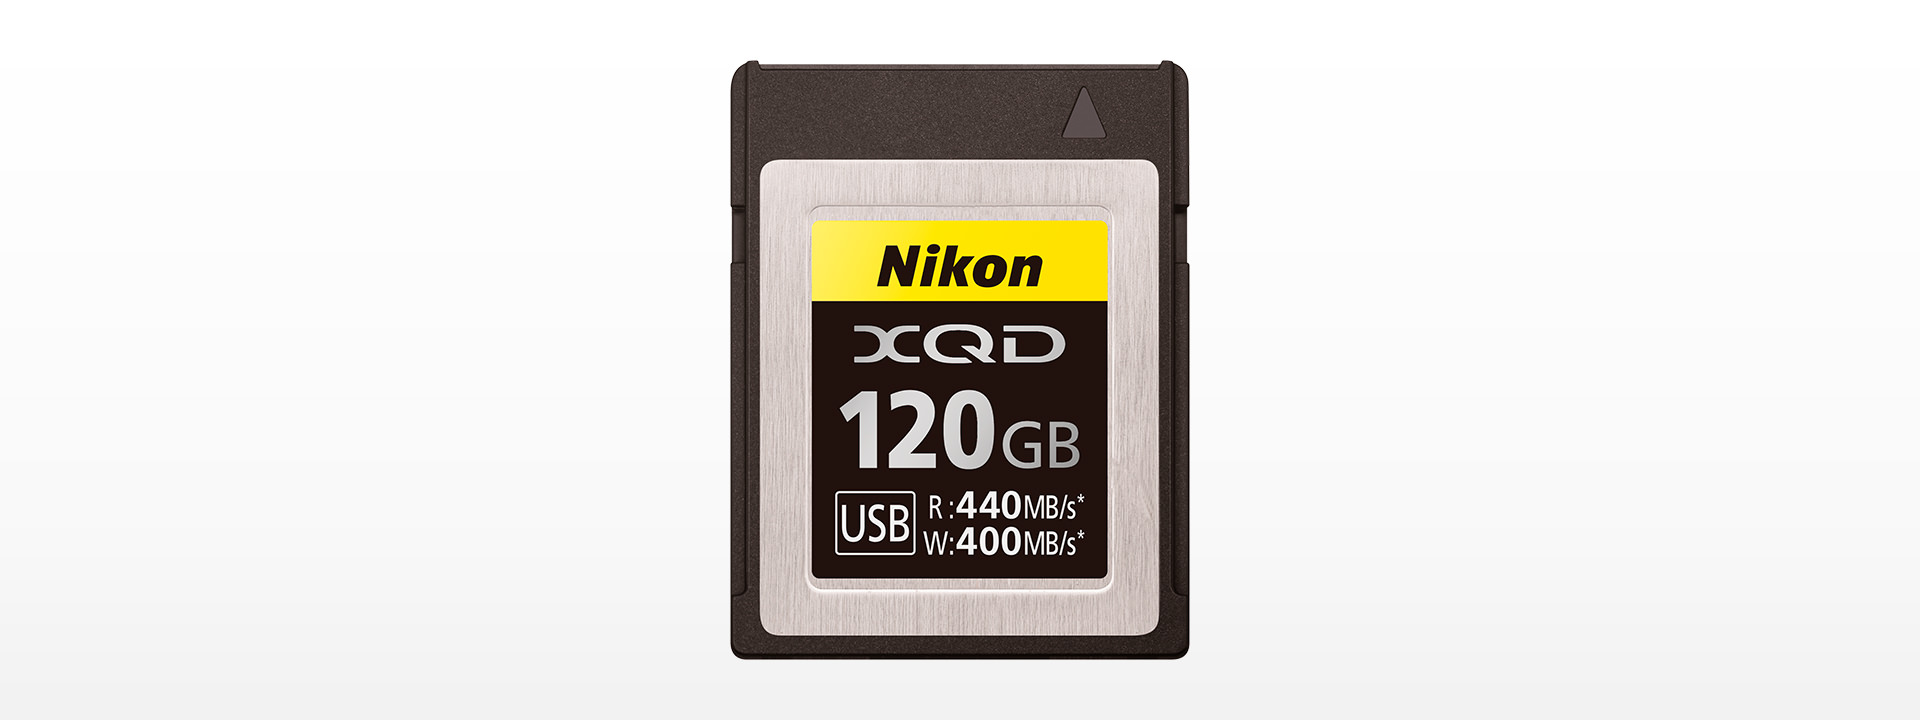 XQDメモリーカード120GB MC-XQ120G - 概要 | ニコンオリジナルグッズ